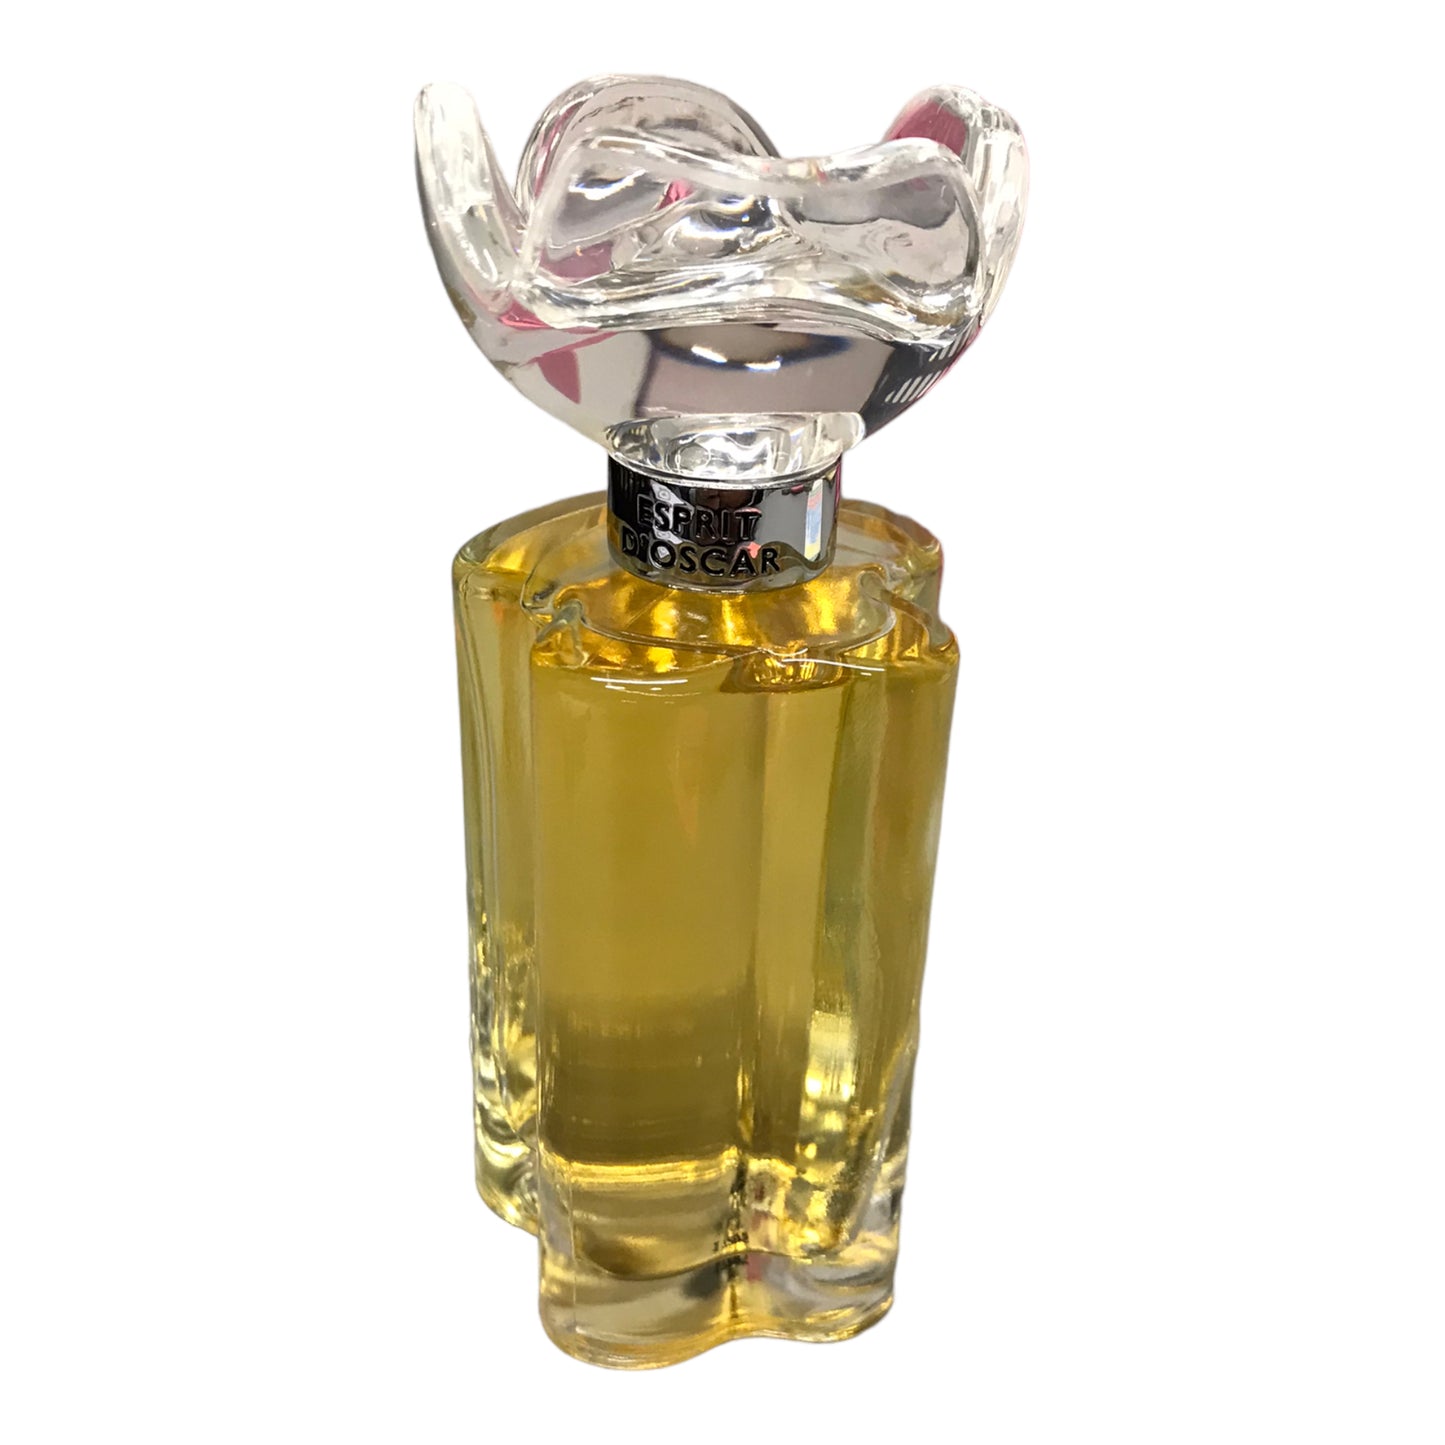 Fragrance By Oscar De La Renta